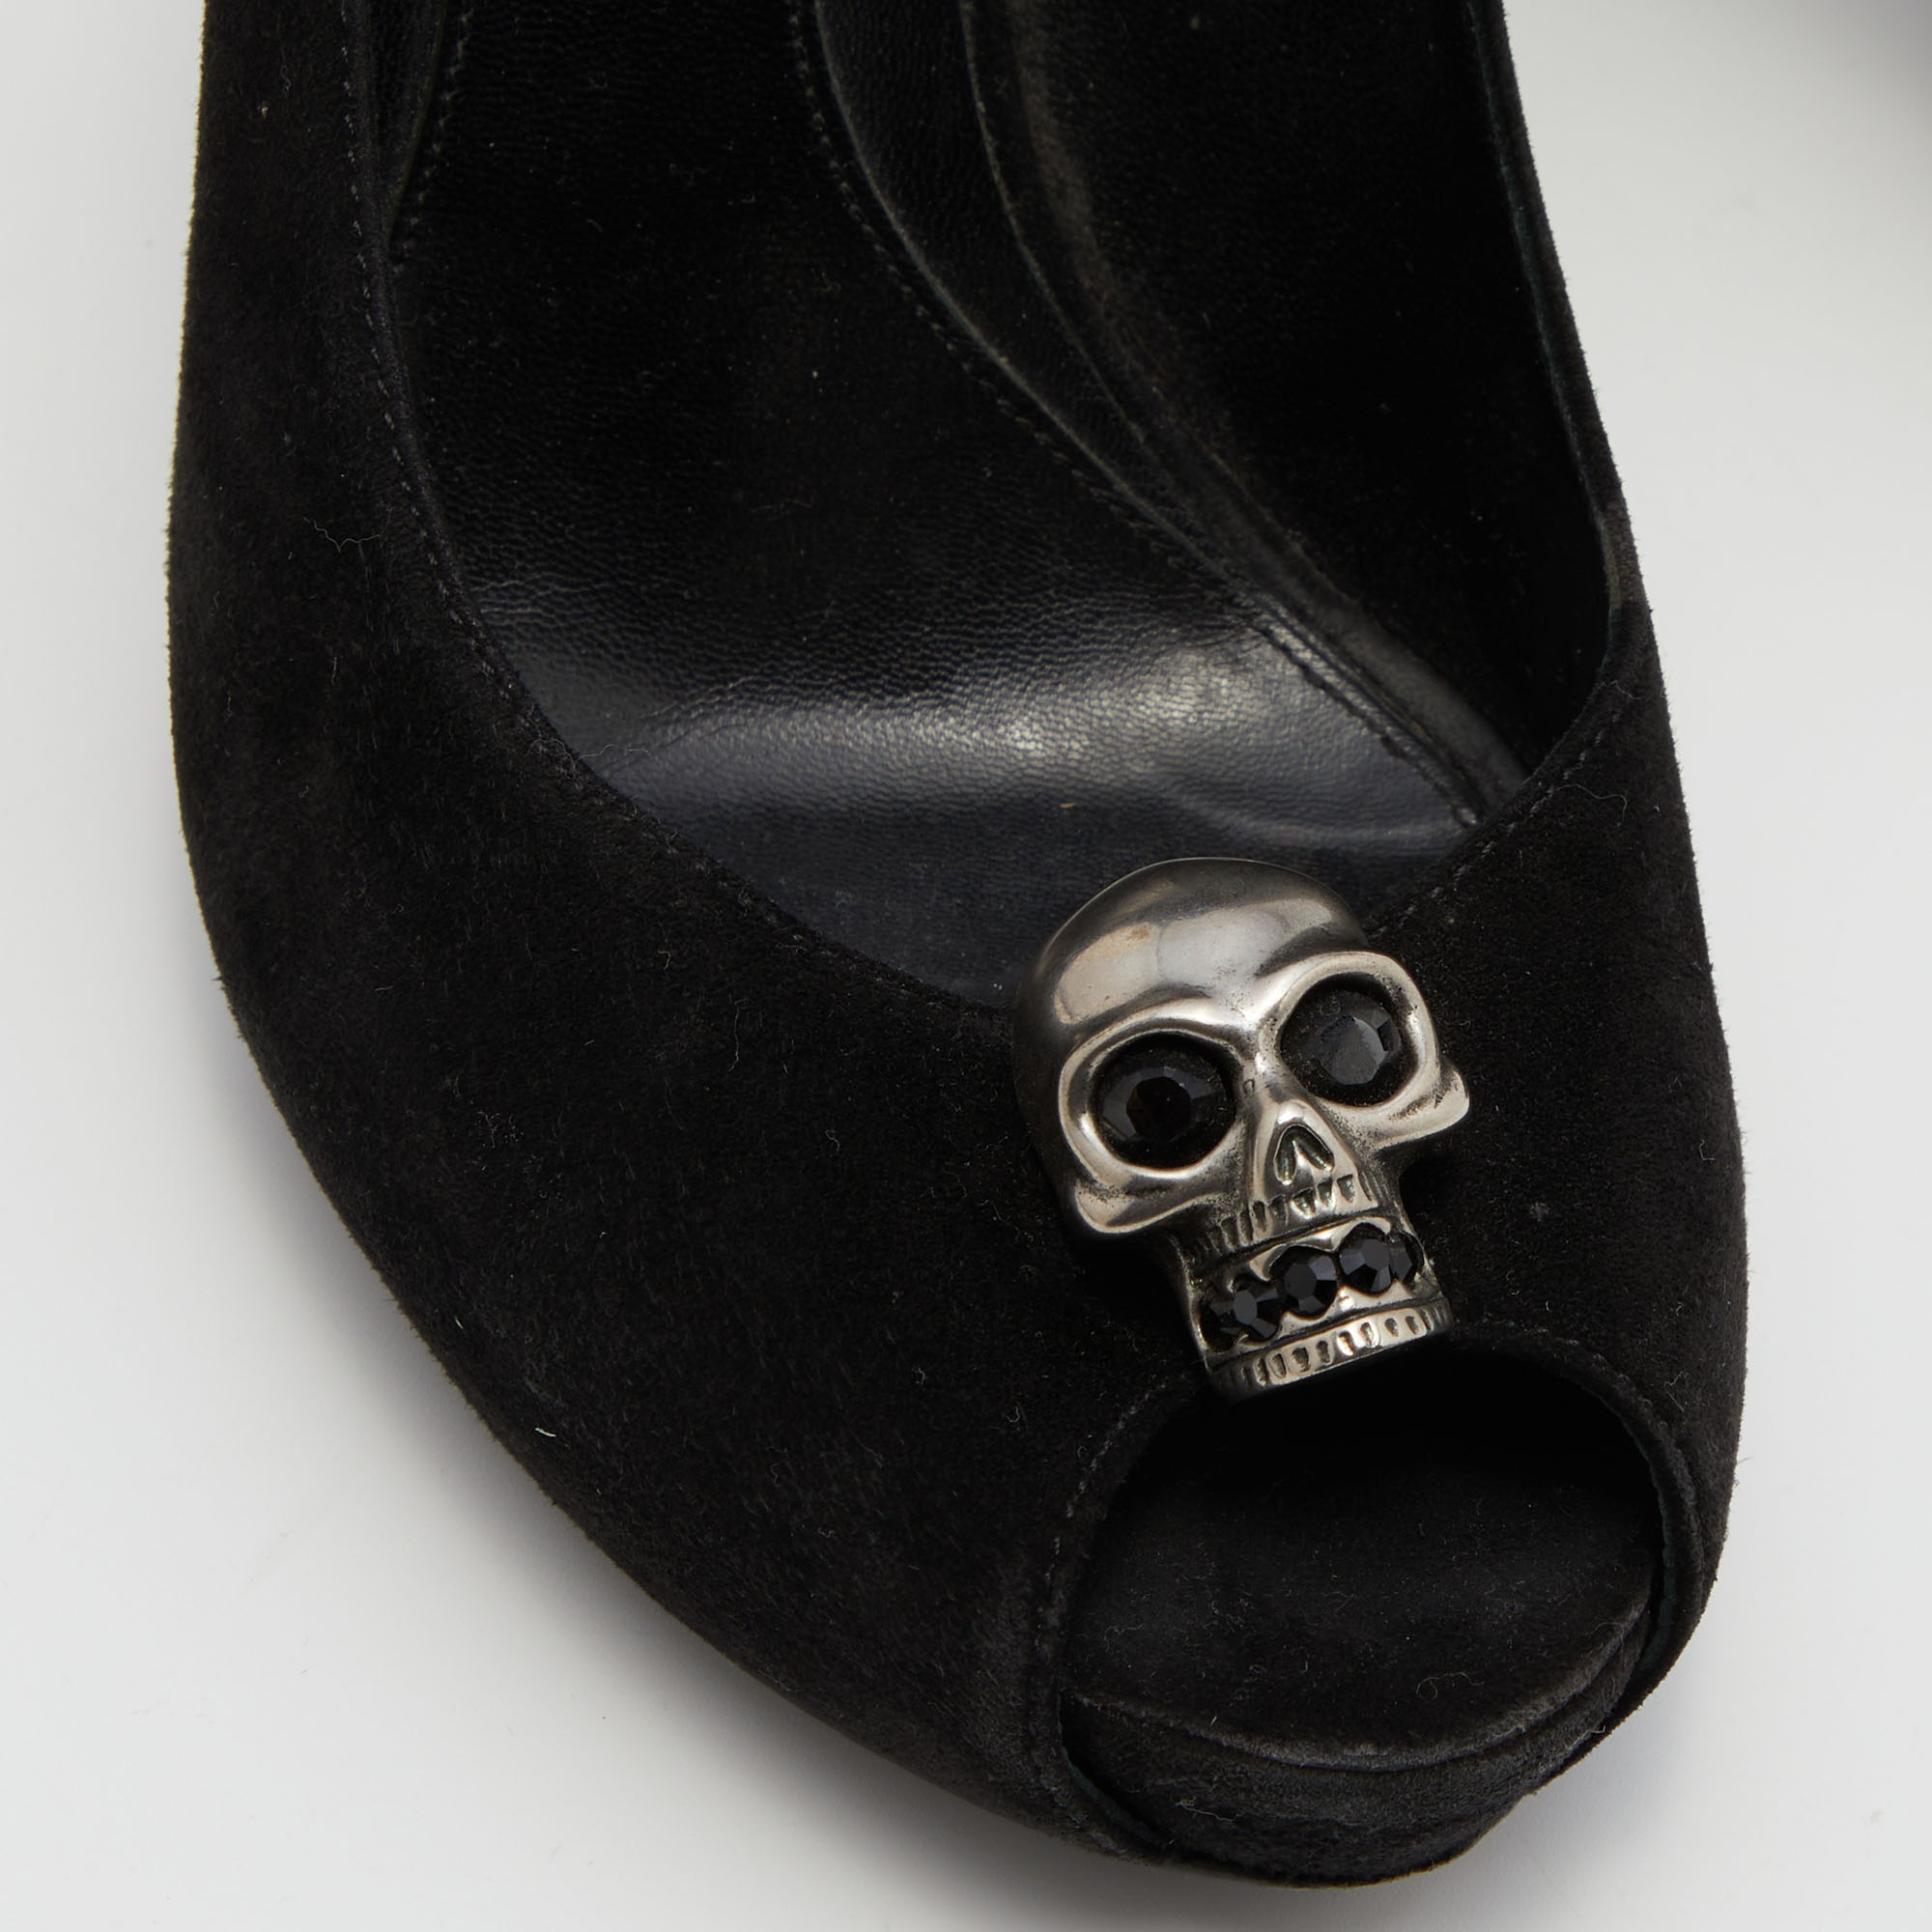 Alexander McQueen Black Suede Skull Peep Toe Pumps Size 38.5